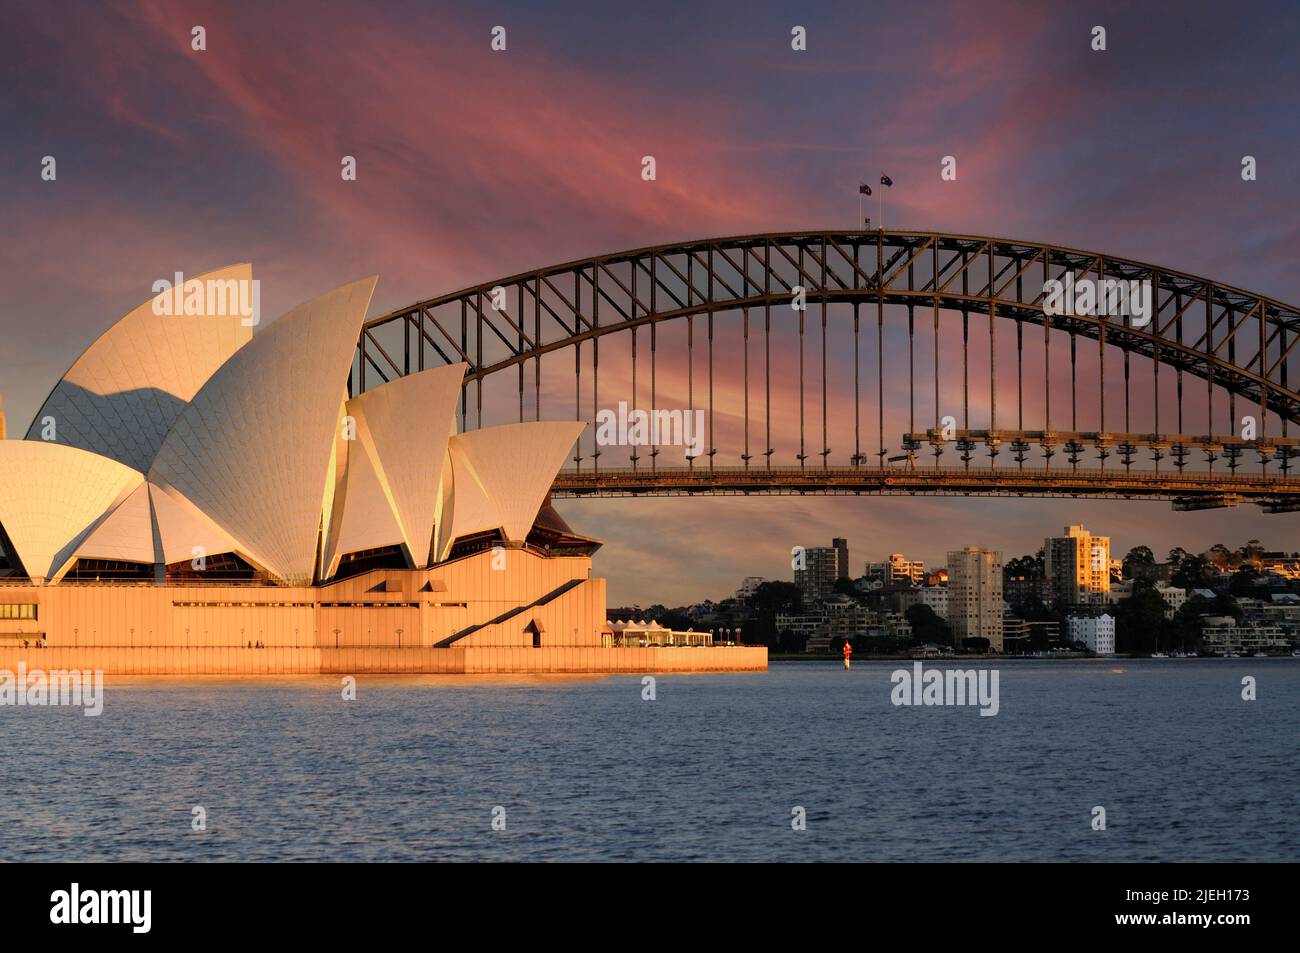 Oper von Sydney von der Harbour Bridge aus gesehen, am frühen Morgen, Sydney, Nueva Gales del Sur, Australien Foto de stock